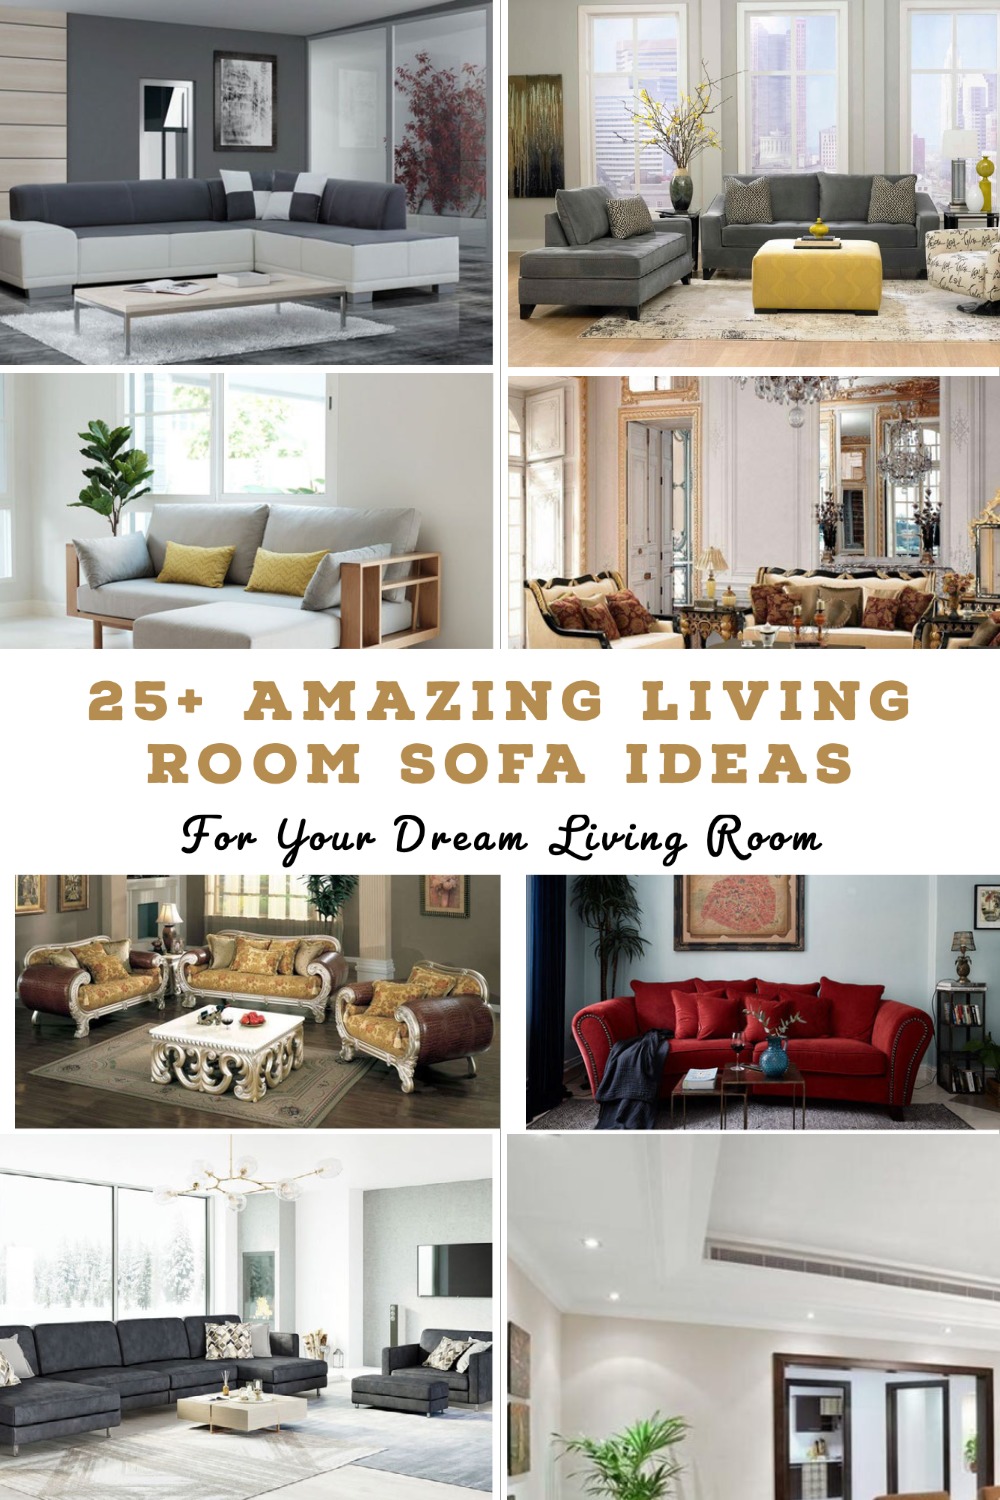 Living Room Sofa Ideas